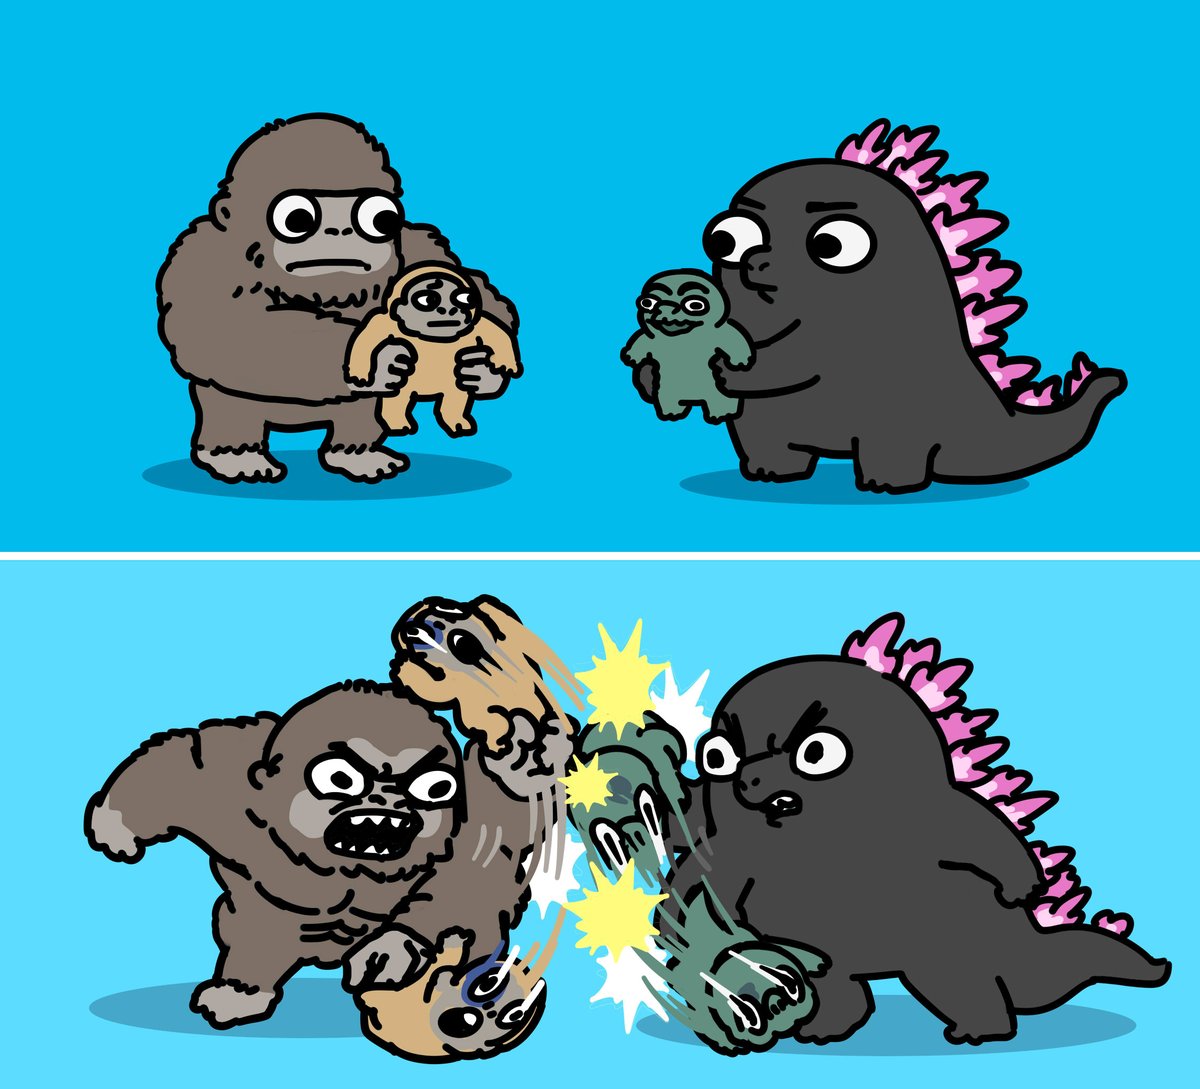 Godzilla and Kong baby fight